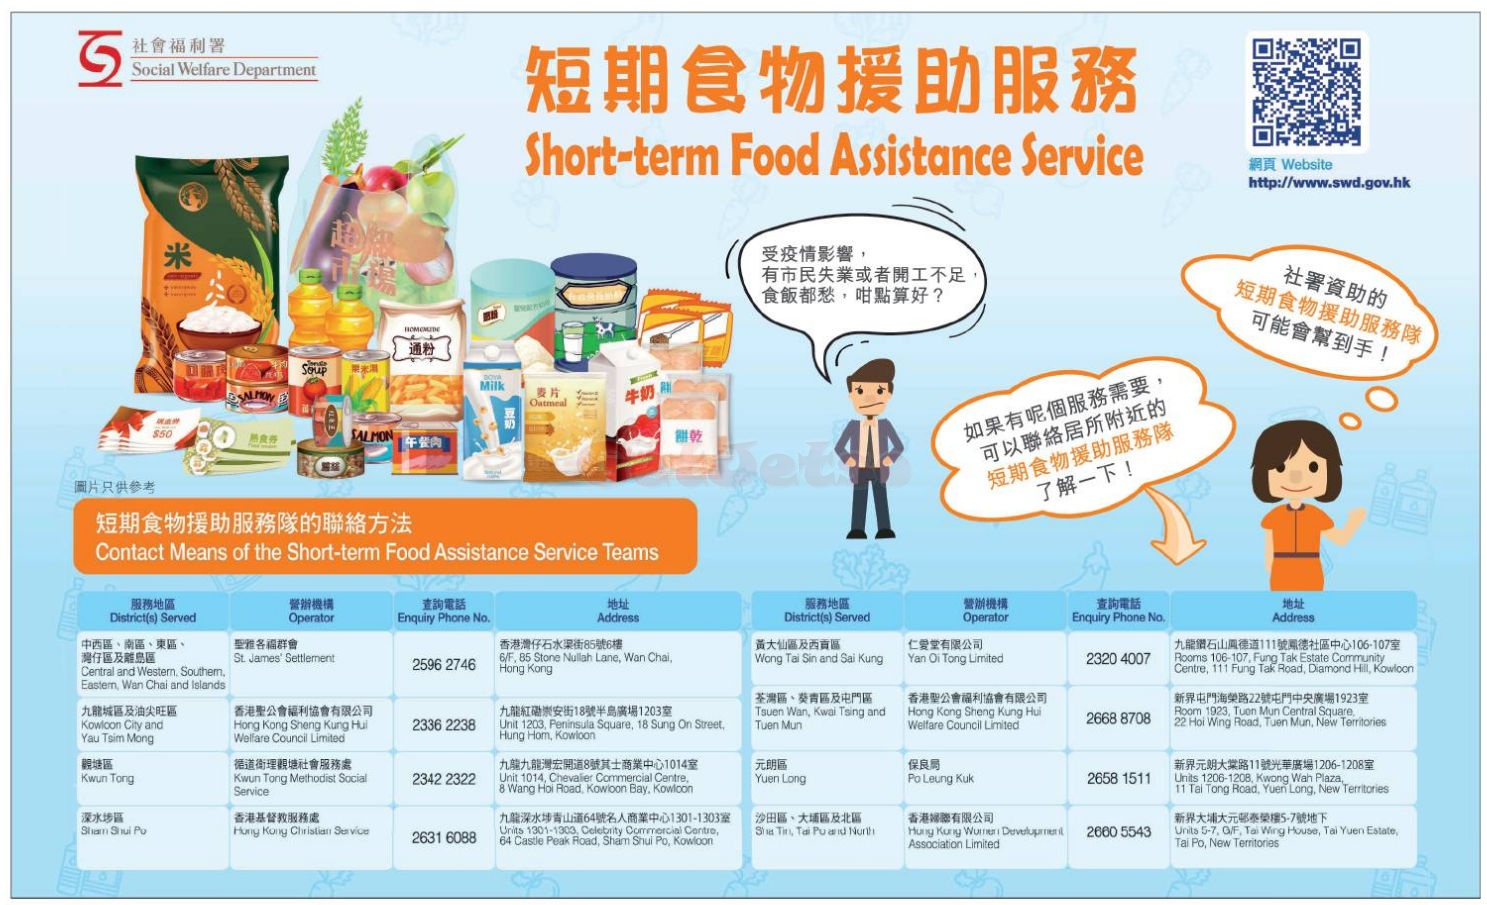 社會福利署短期食物援助服務(2月22日更新)圖片1